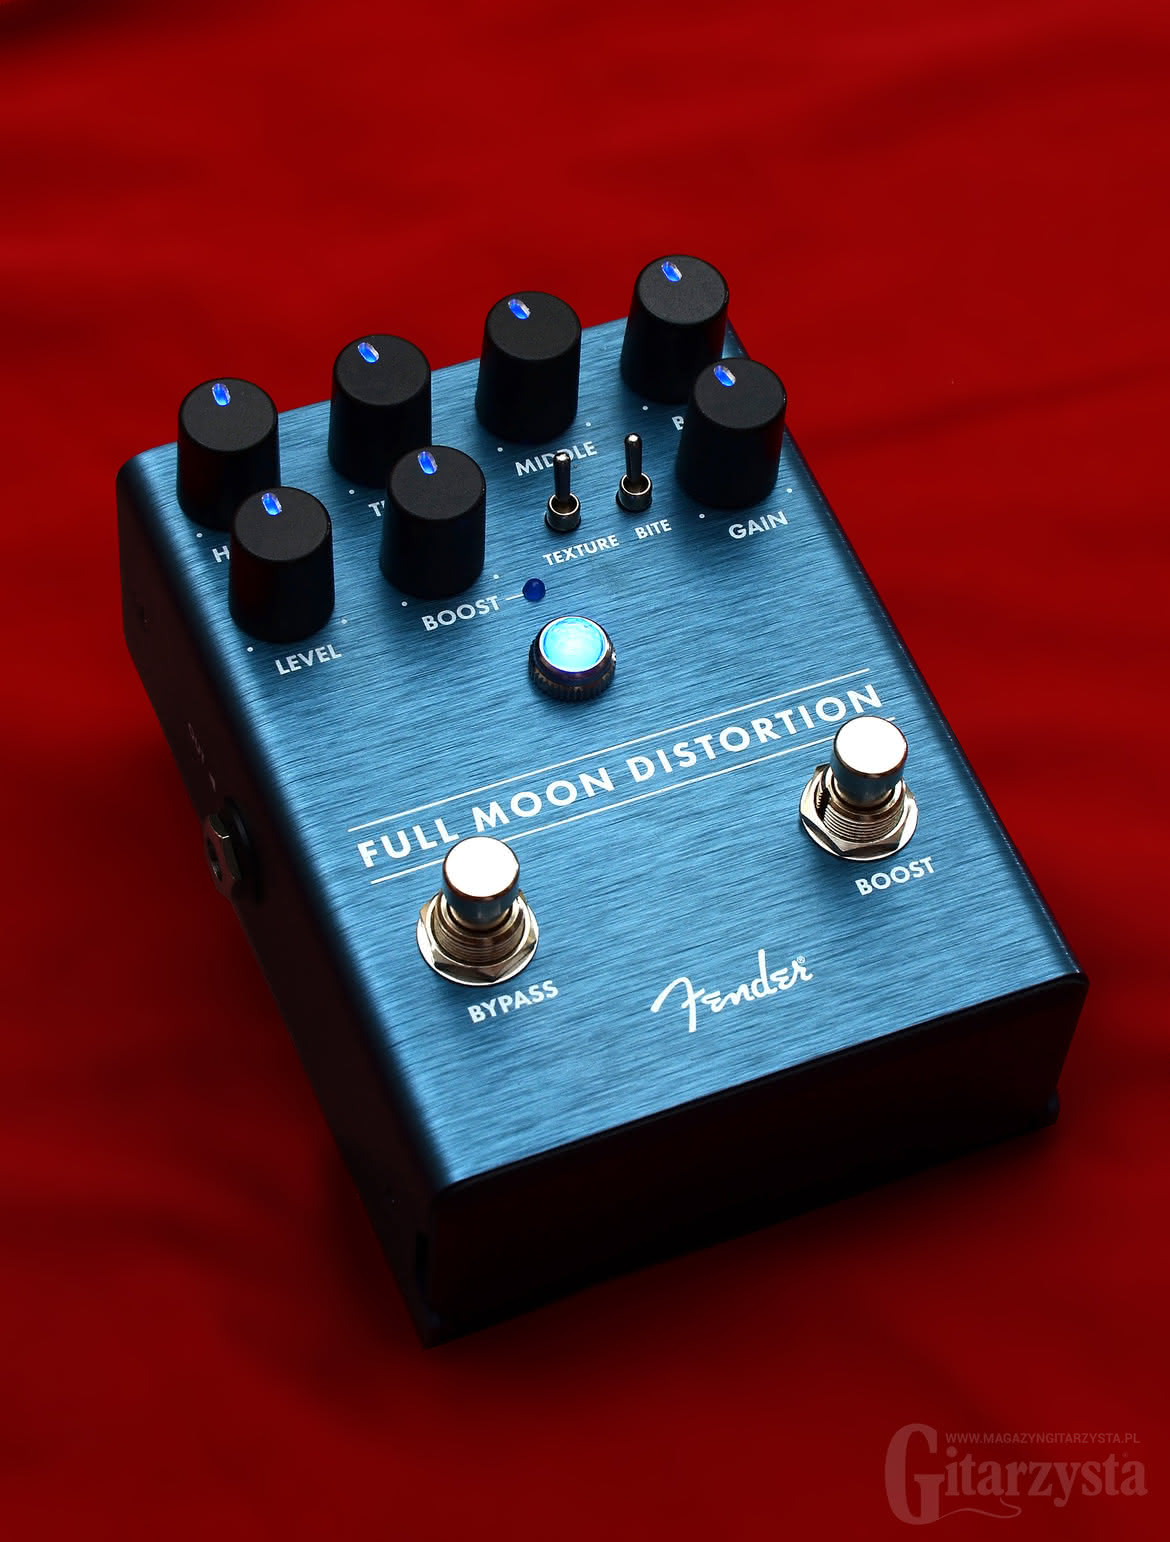 Fender Full Moon Distortion